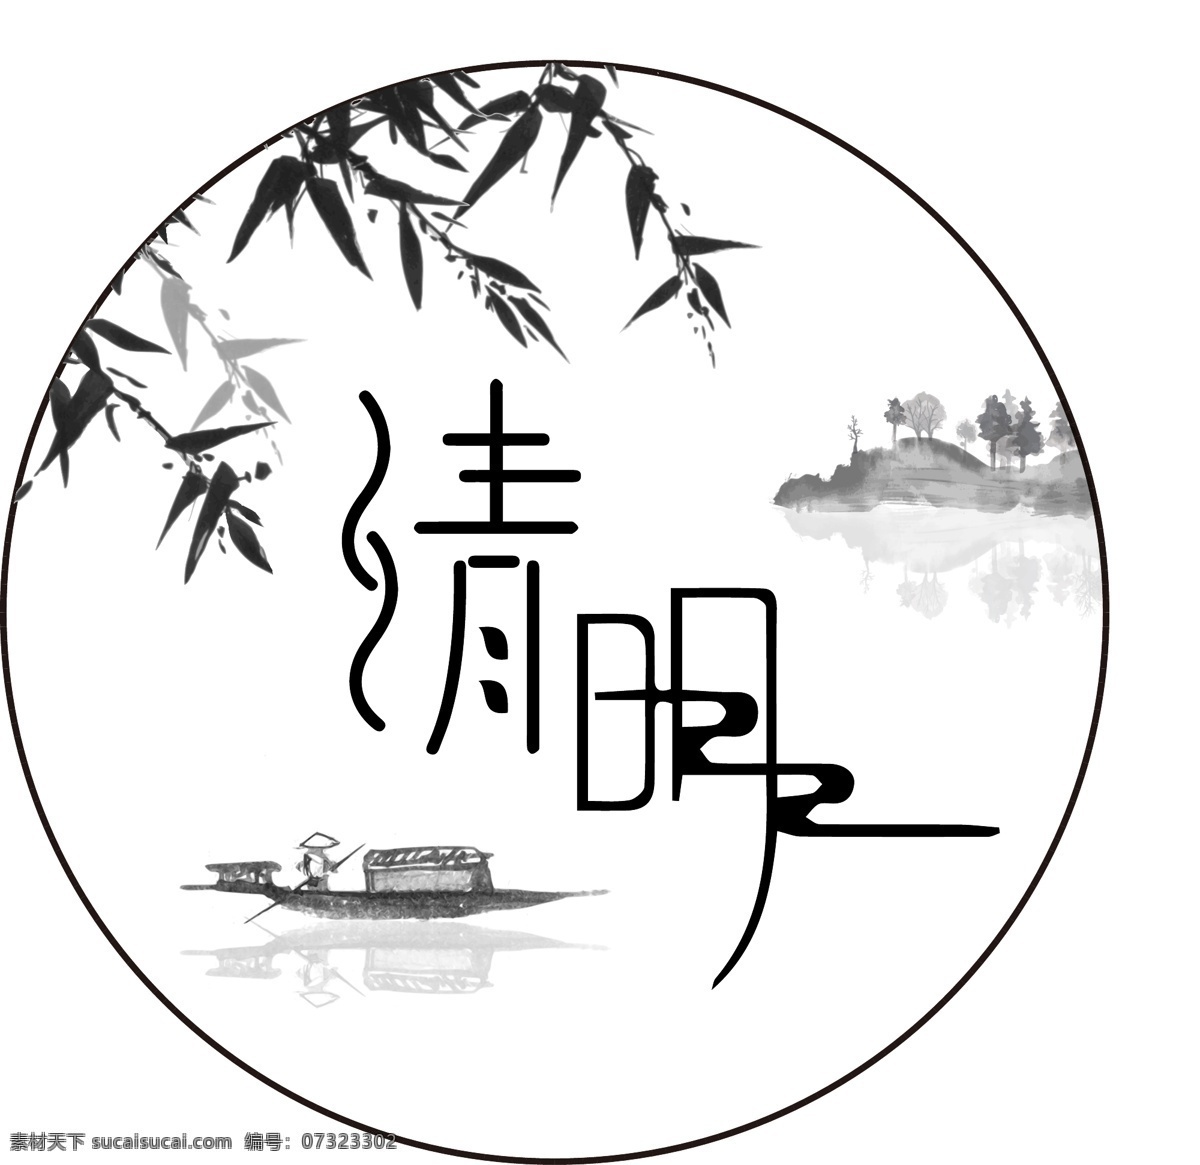 清明节 字体 水墨 元素 清明 节气 传统 节日 中国风 古风 艺术字 字体设计 柳叶 船 山水